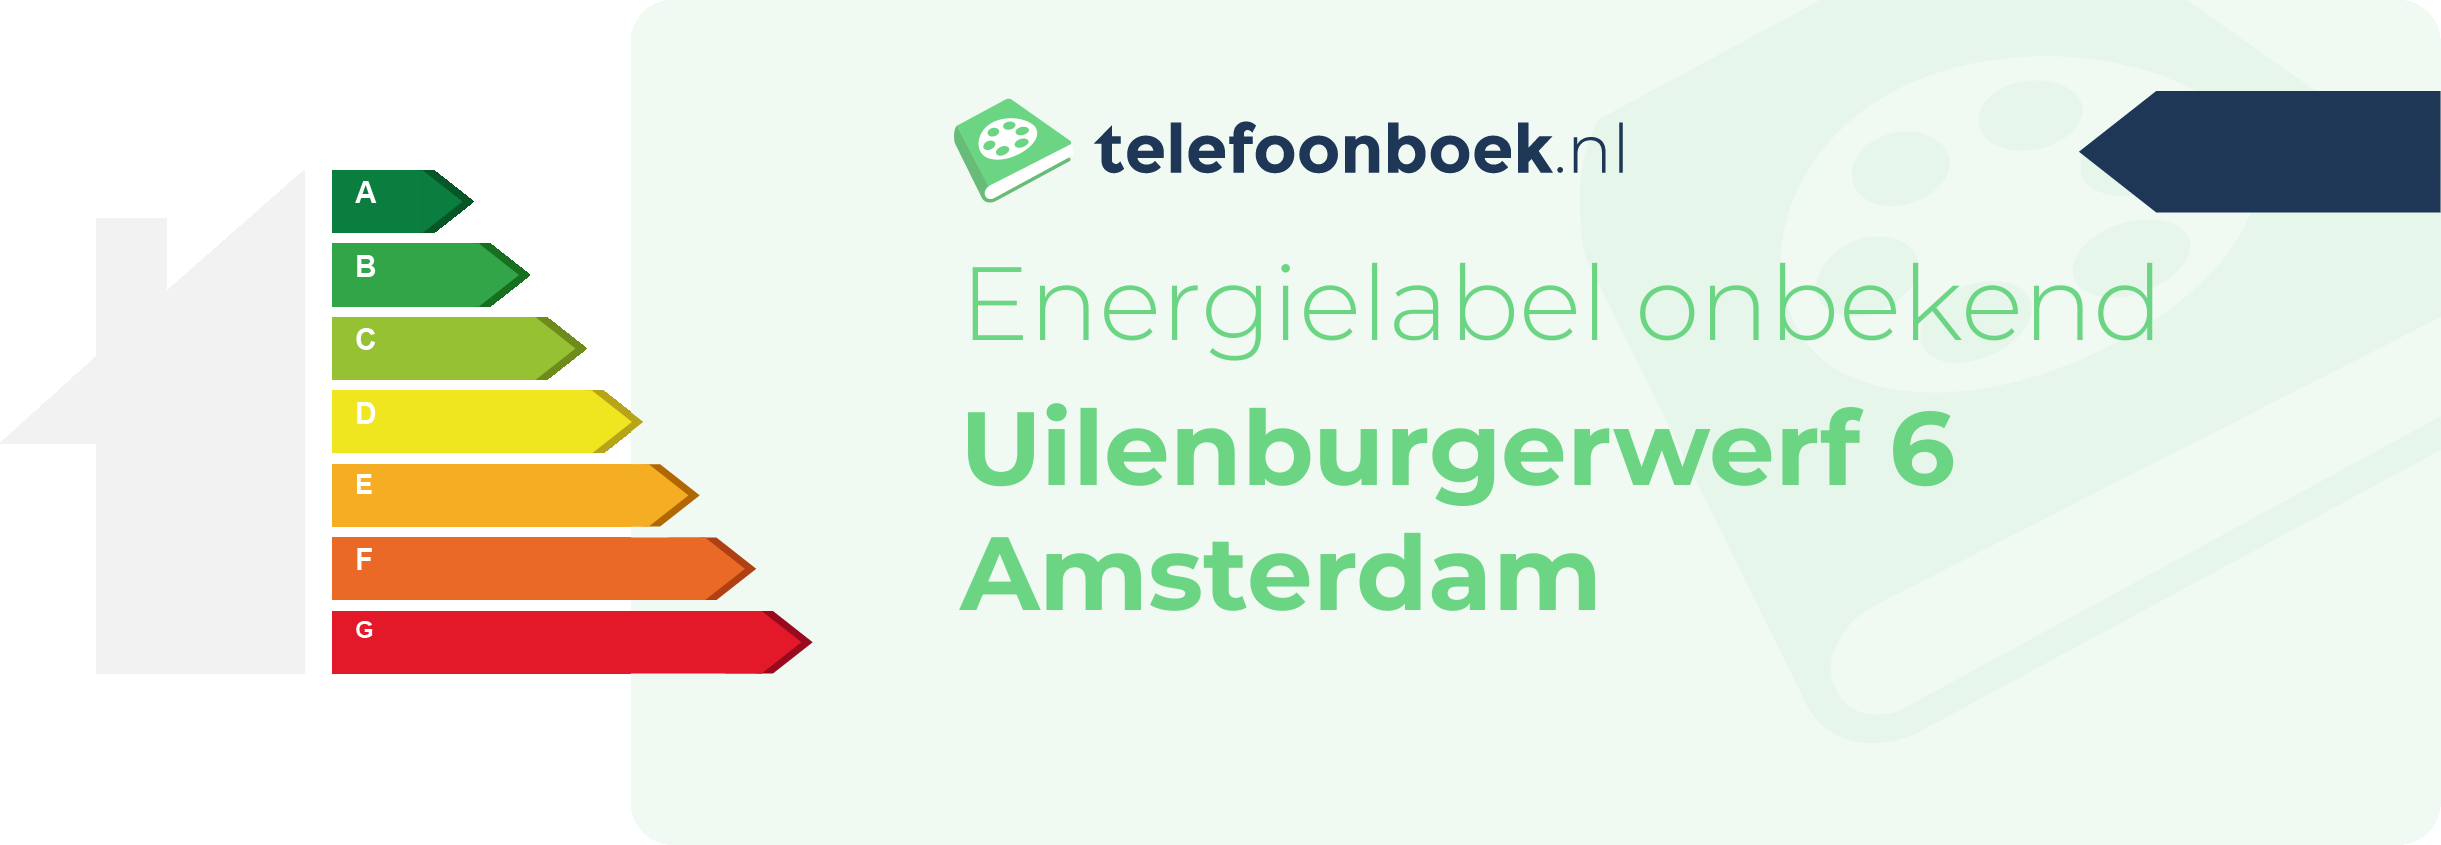 Energielabel Uilenburgerwerf 6 Amsterdam